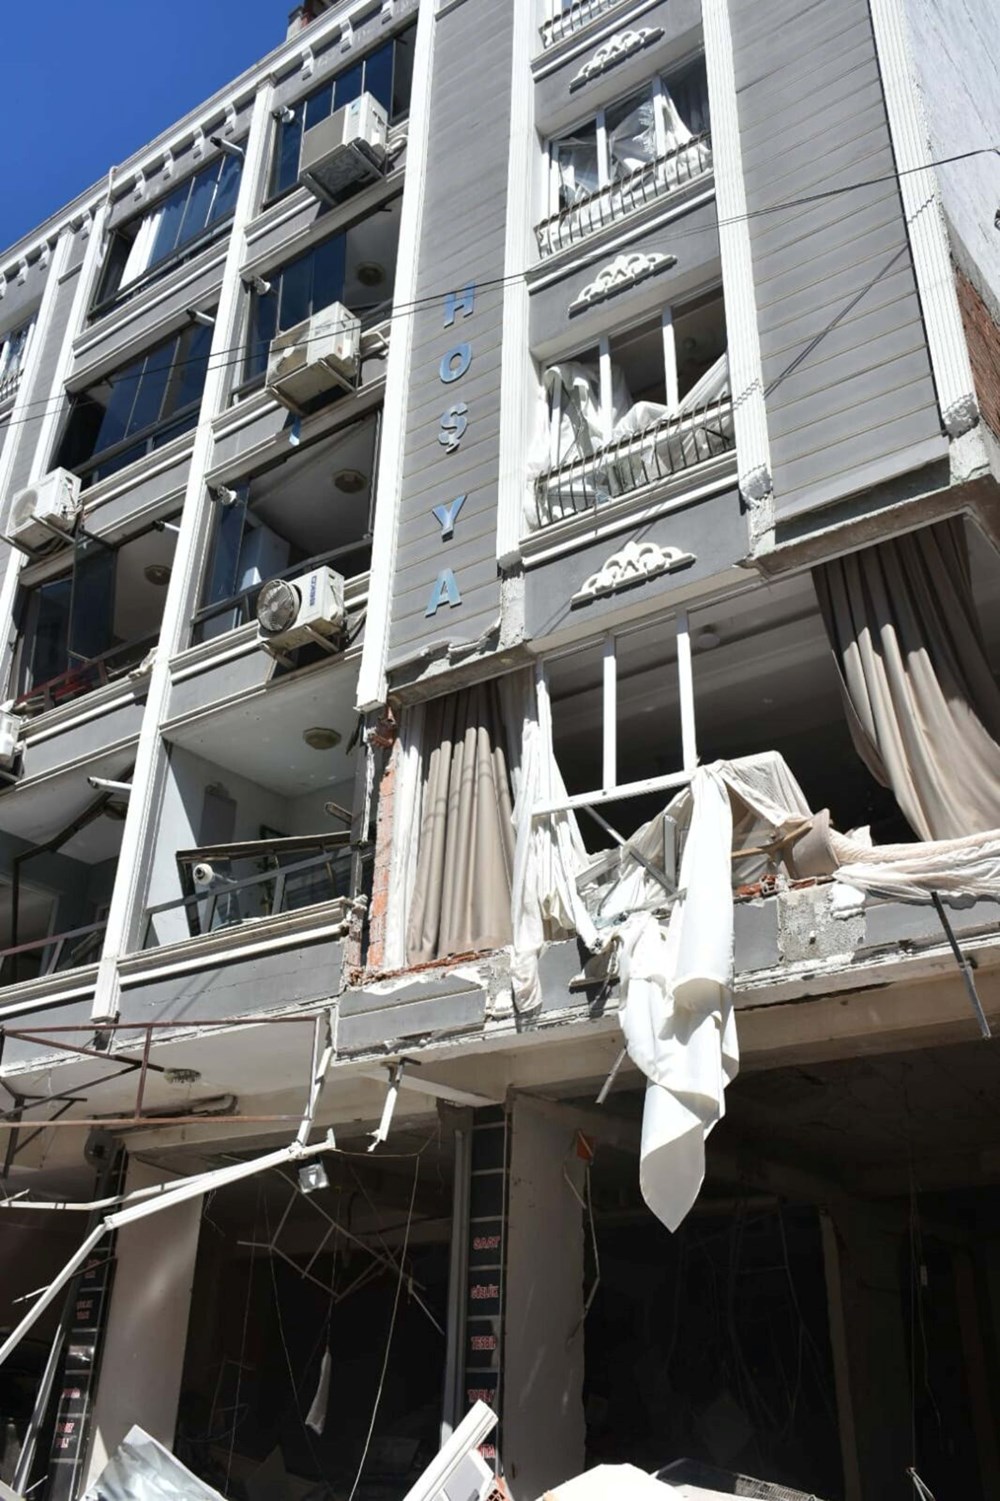 SON DAKİKA HABERİ | İzmir Torbalı'da bir binada doğalgaz patlaması: 4 ölü, 20 yaralı - 14